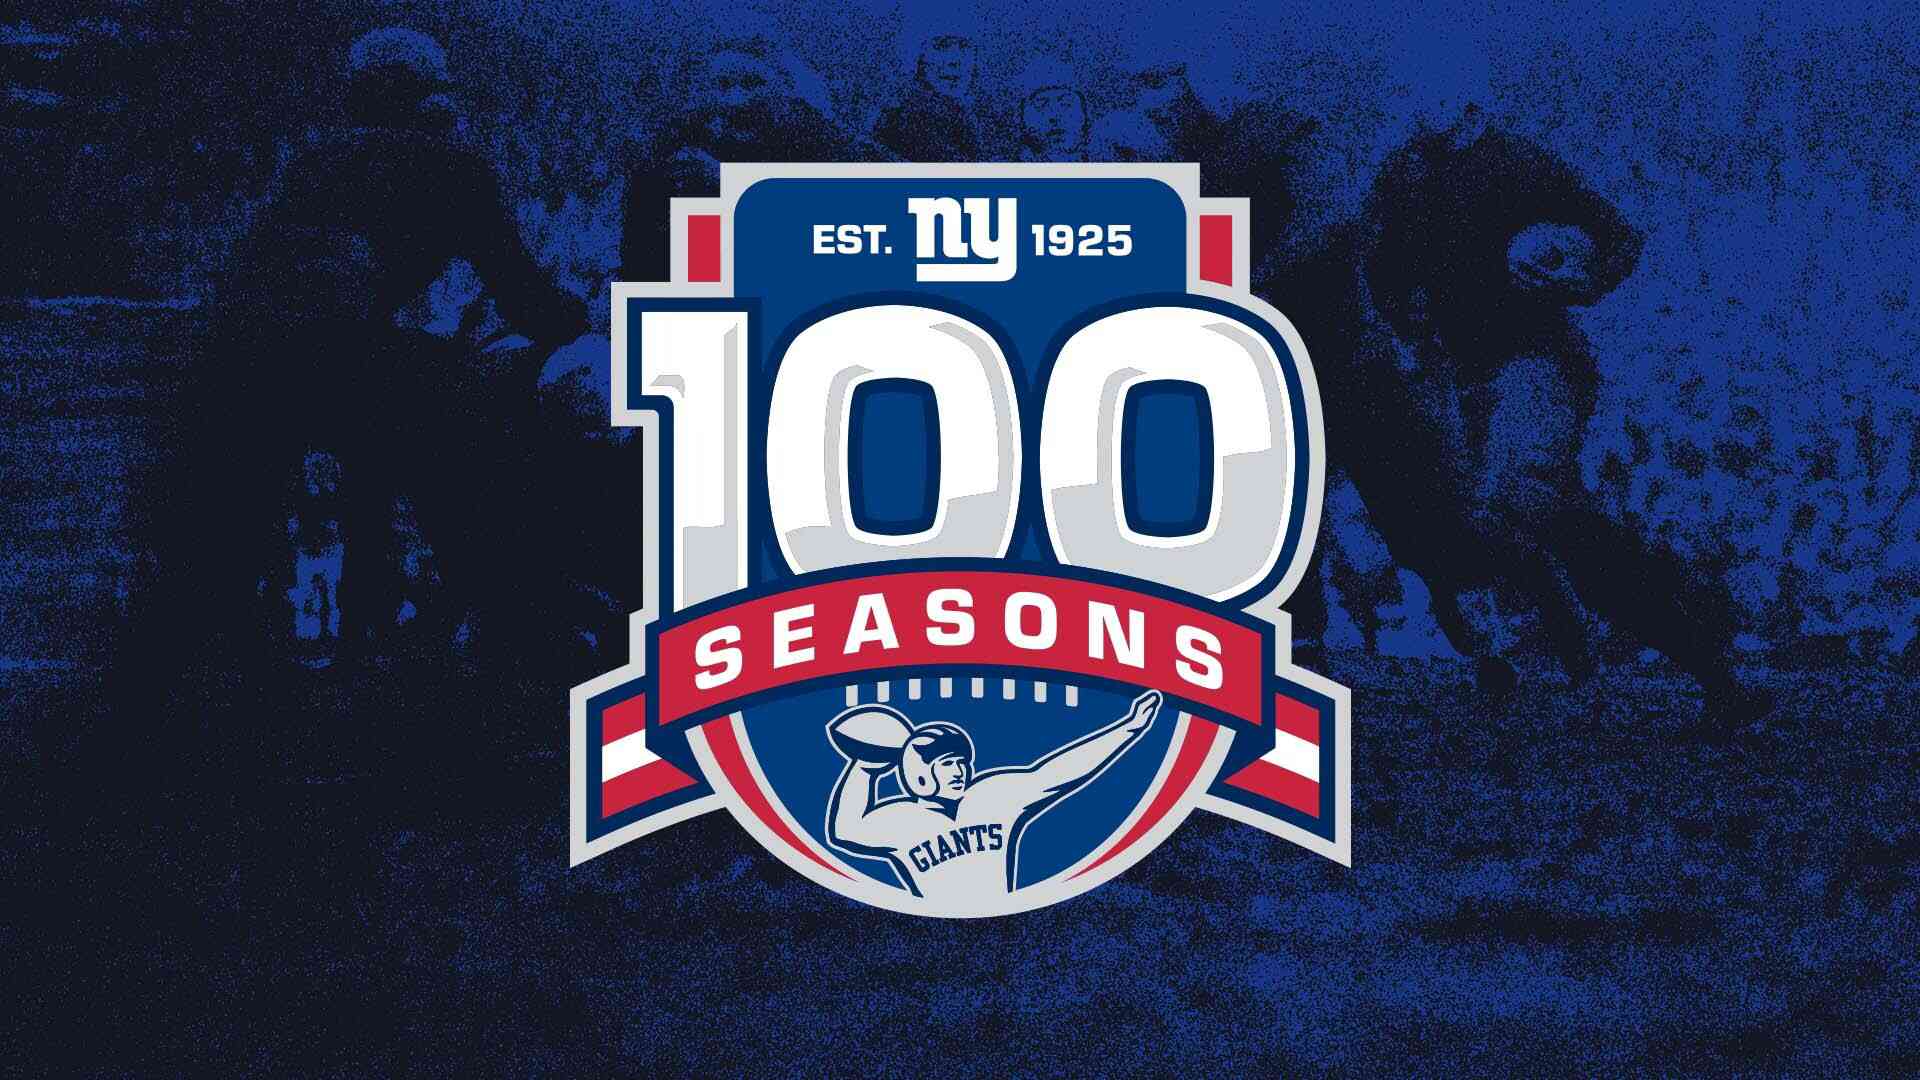 Giants 100th Season | New York Giants – Giants.com